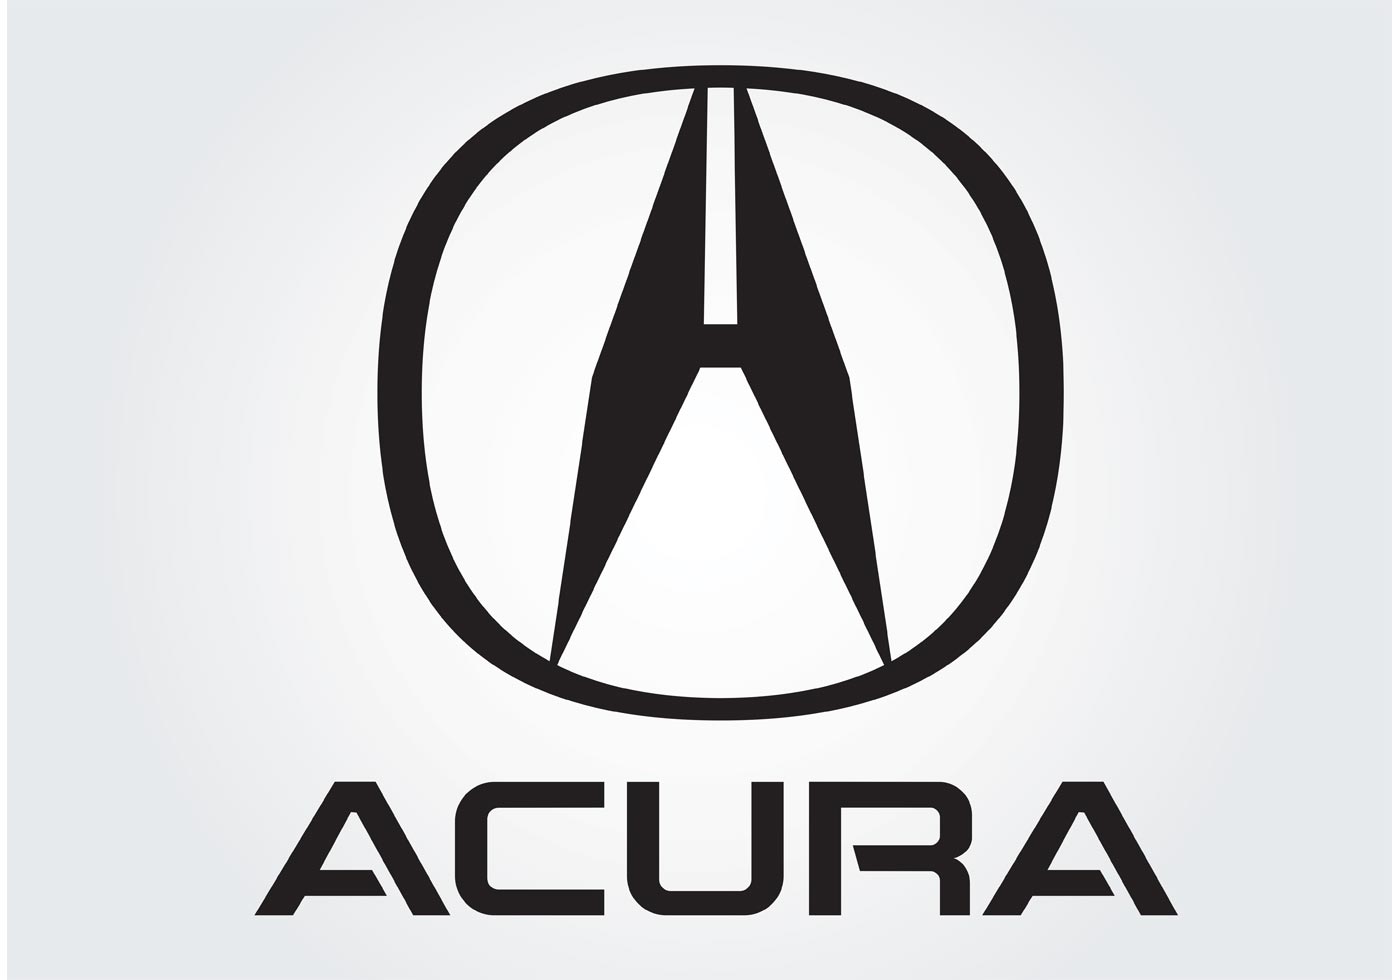                                                 Xe Acura của hãng nào ?